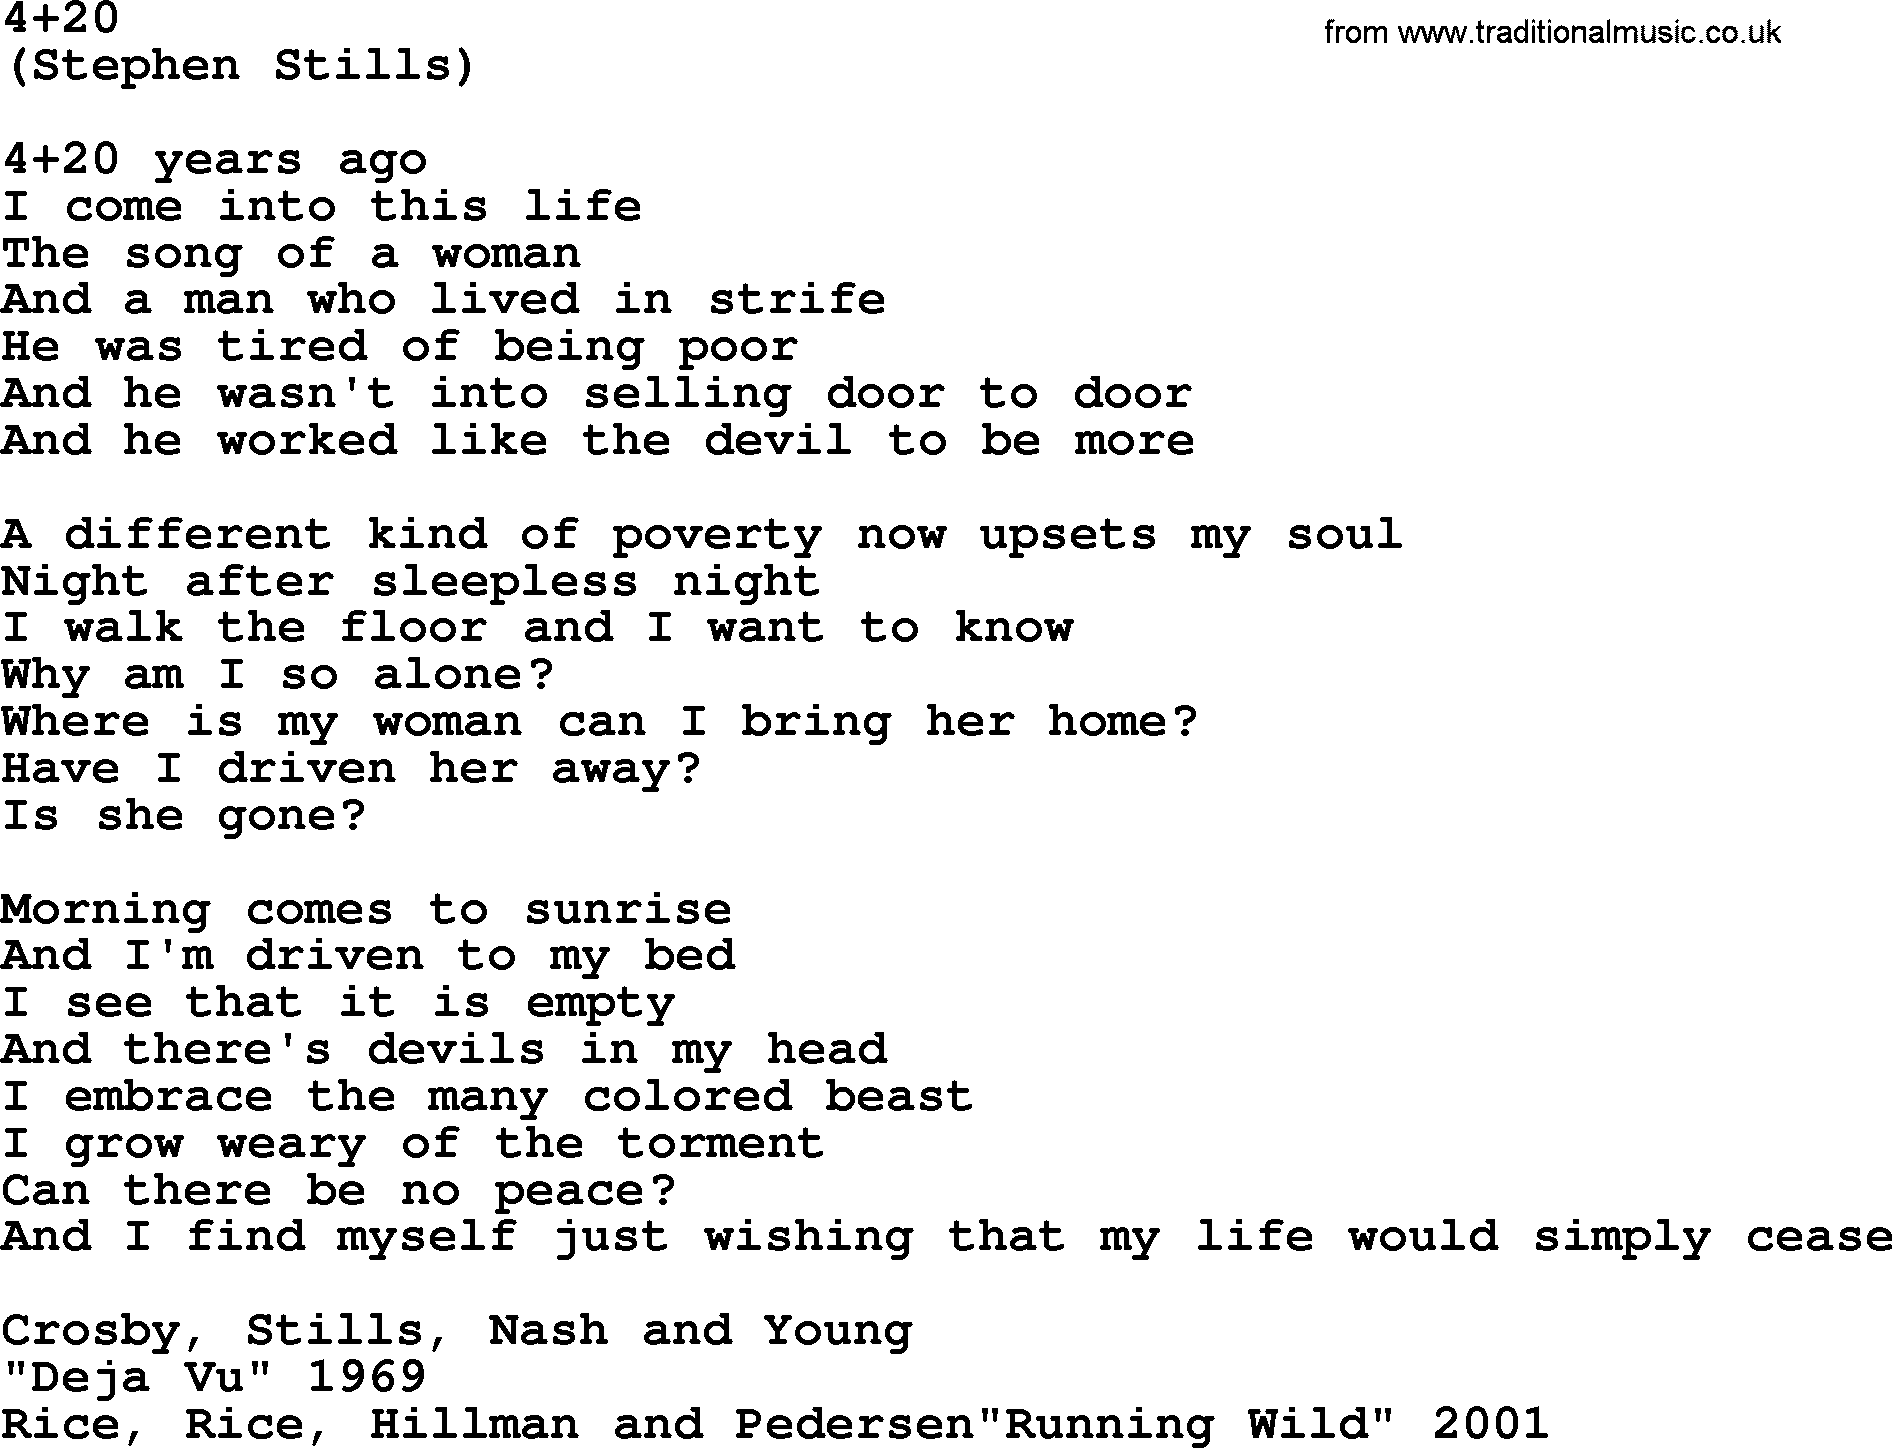 The Byrds song 4+20, lyrics